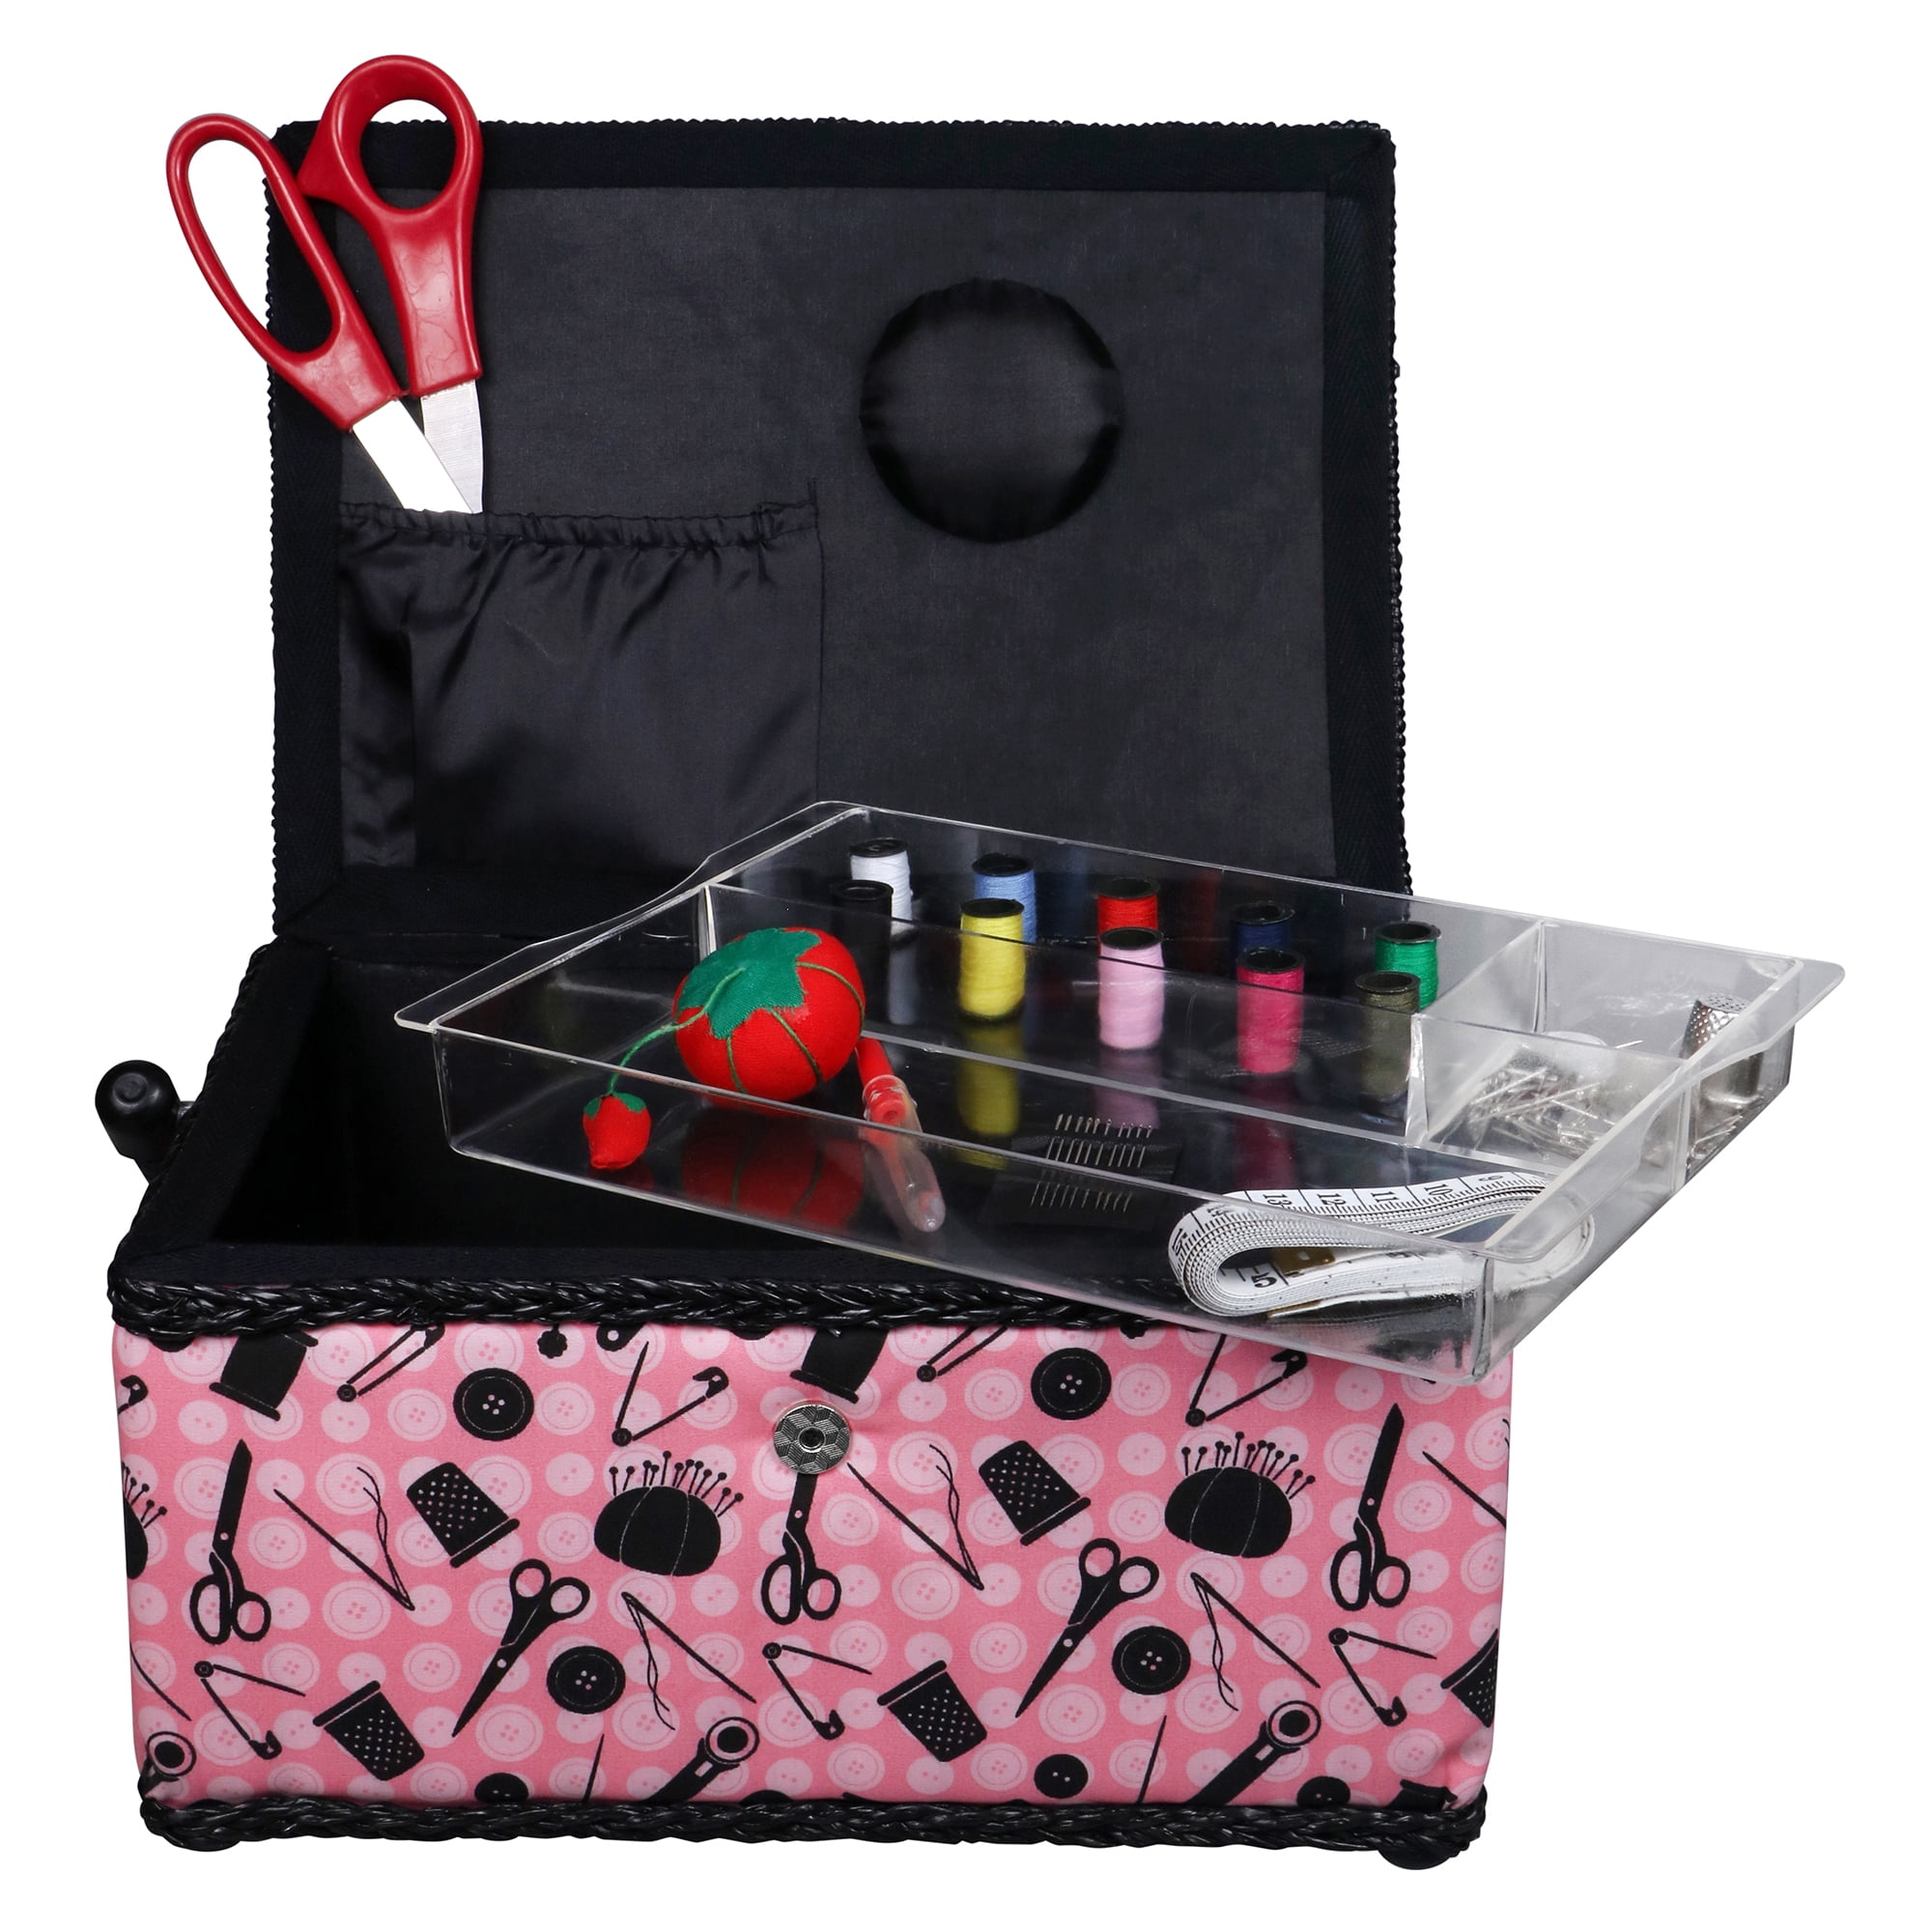 Singer 01513 Pink Cool Case Sewing Kit 